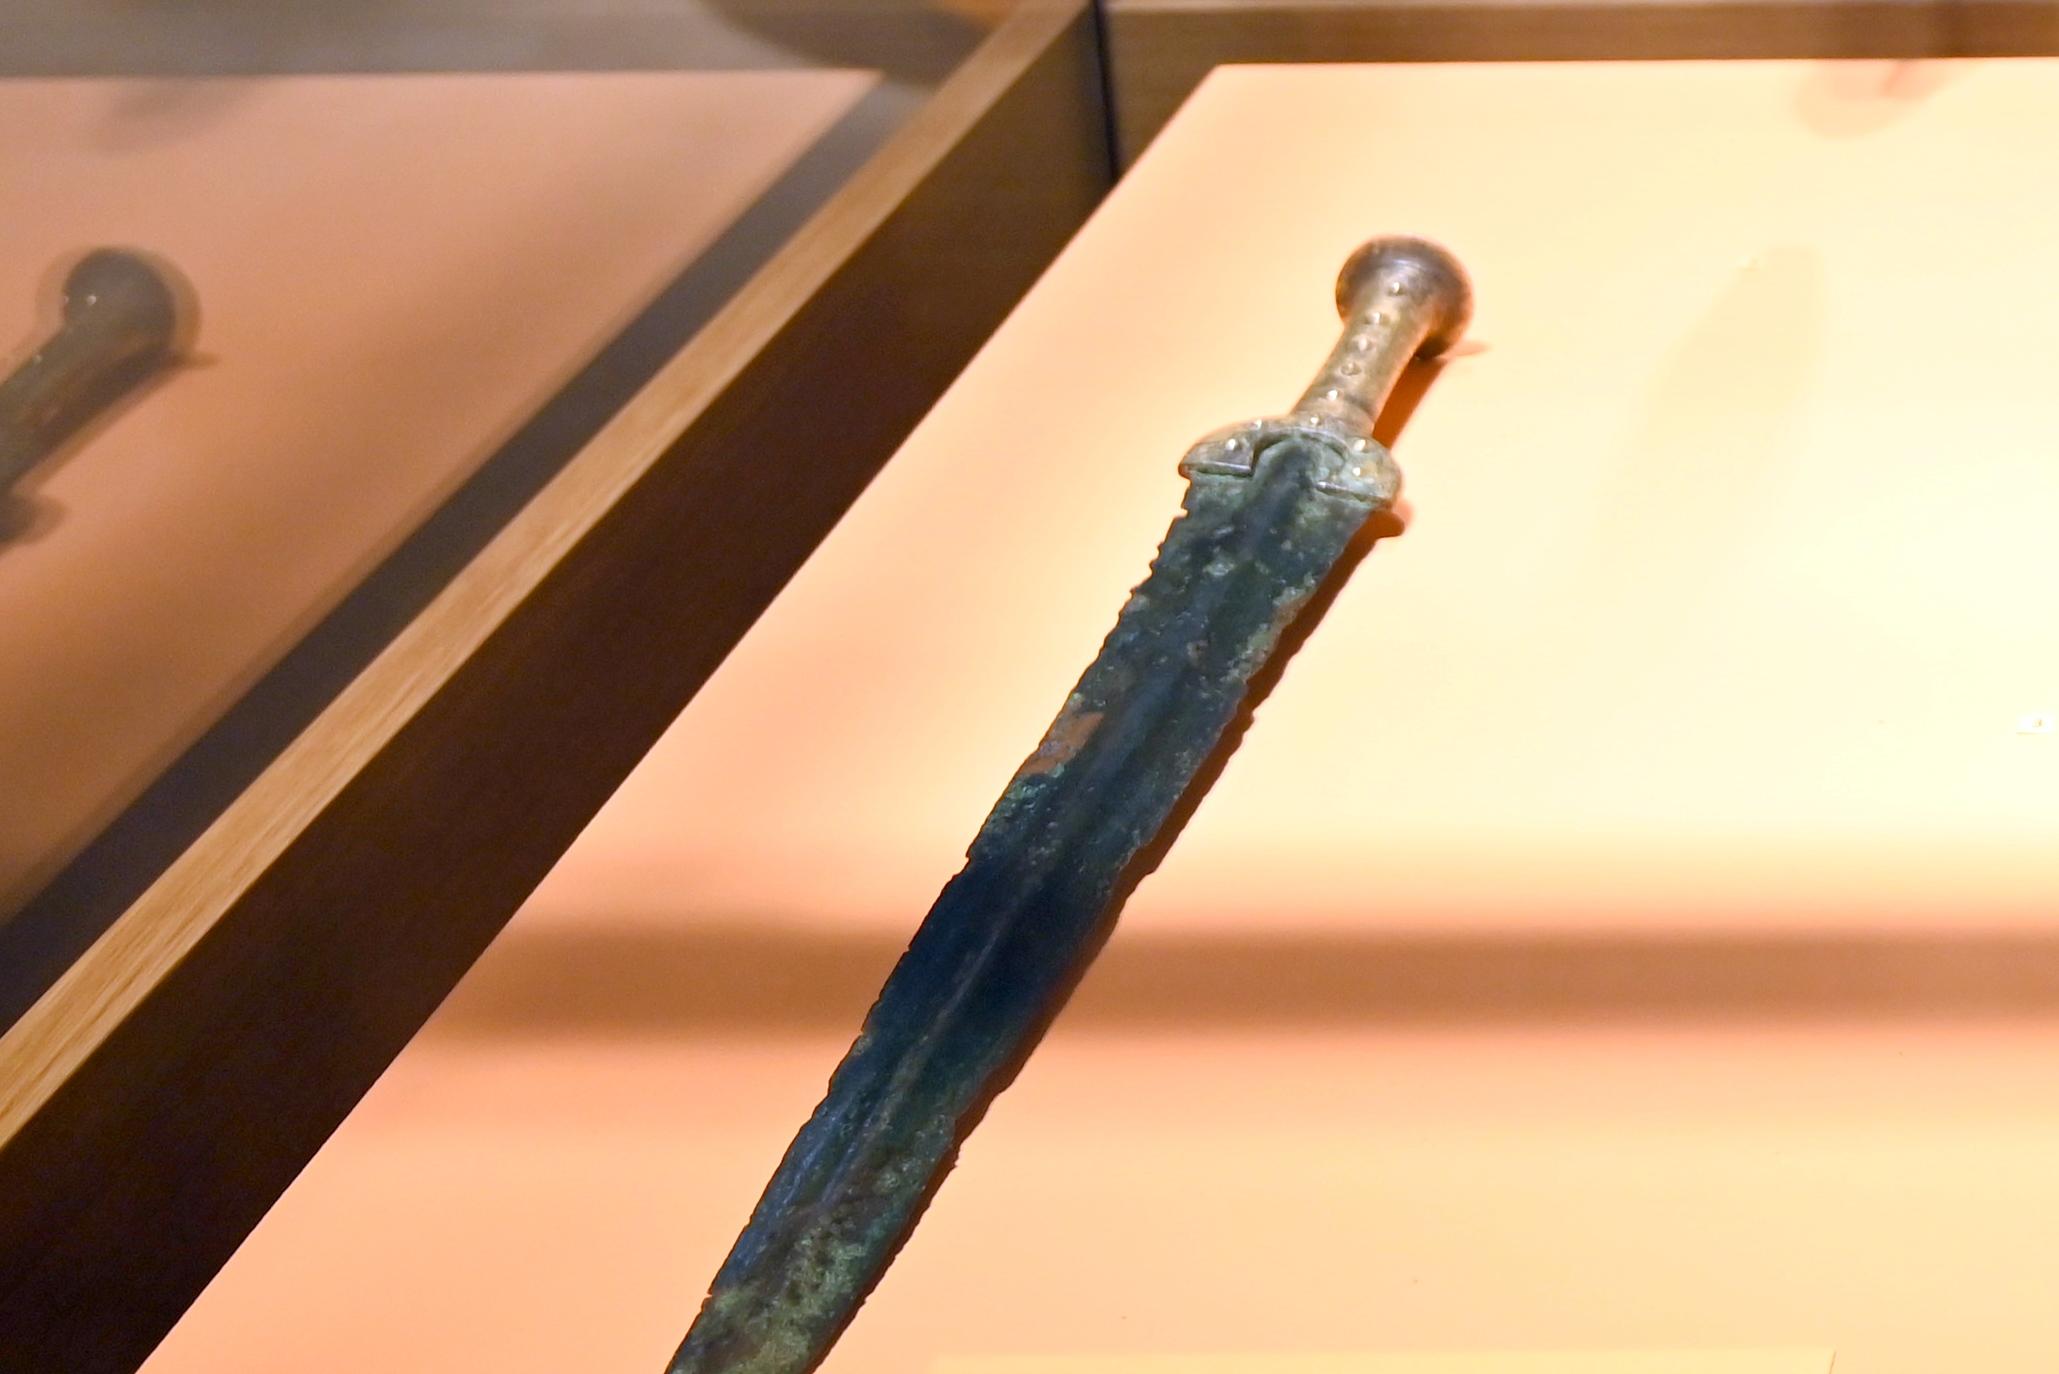 Schwert von Oedt (Klinge), Bronzezeit, 3365 - 700 v. Chr.